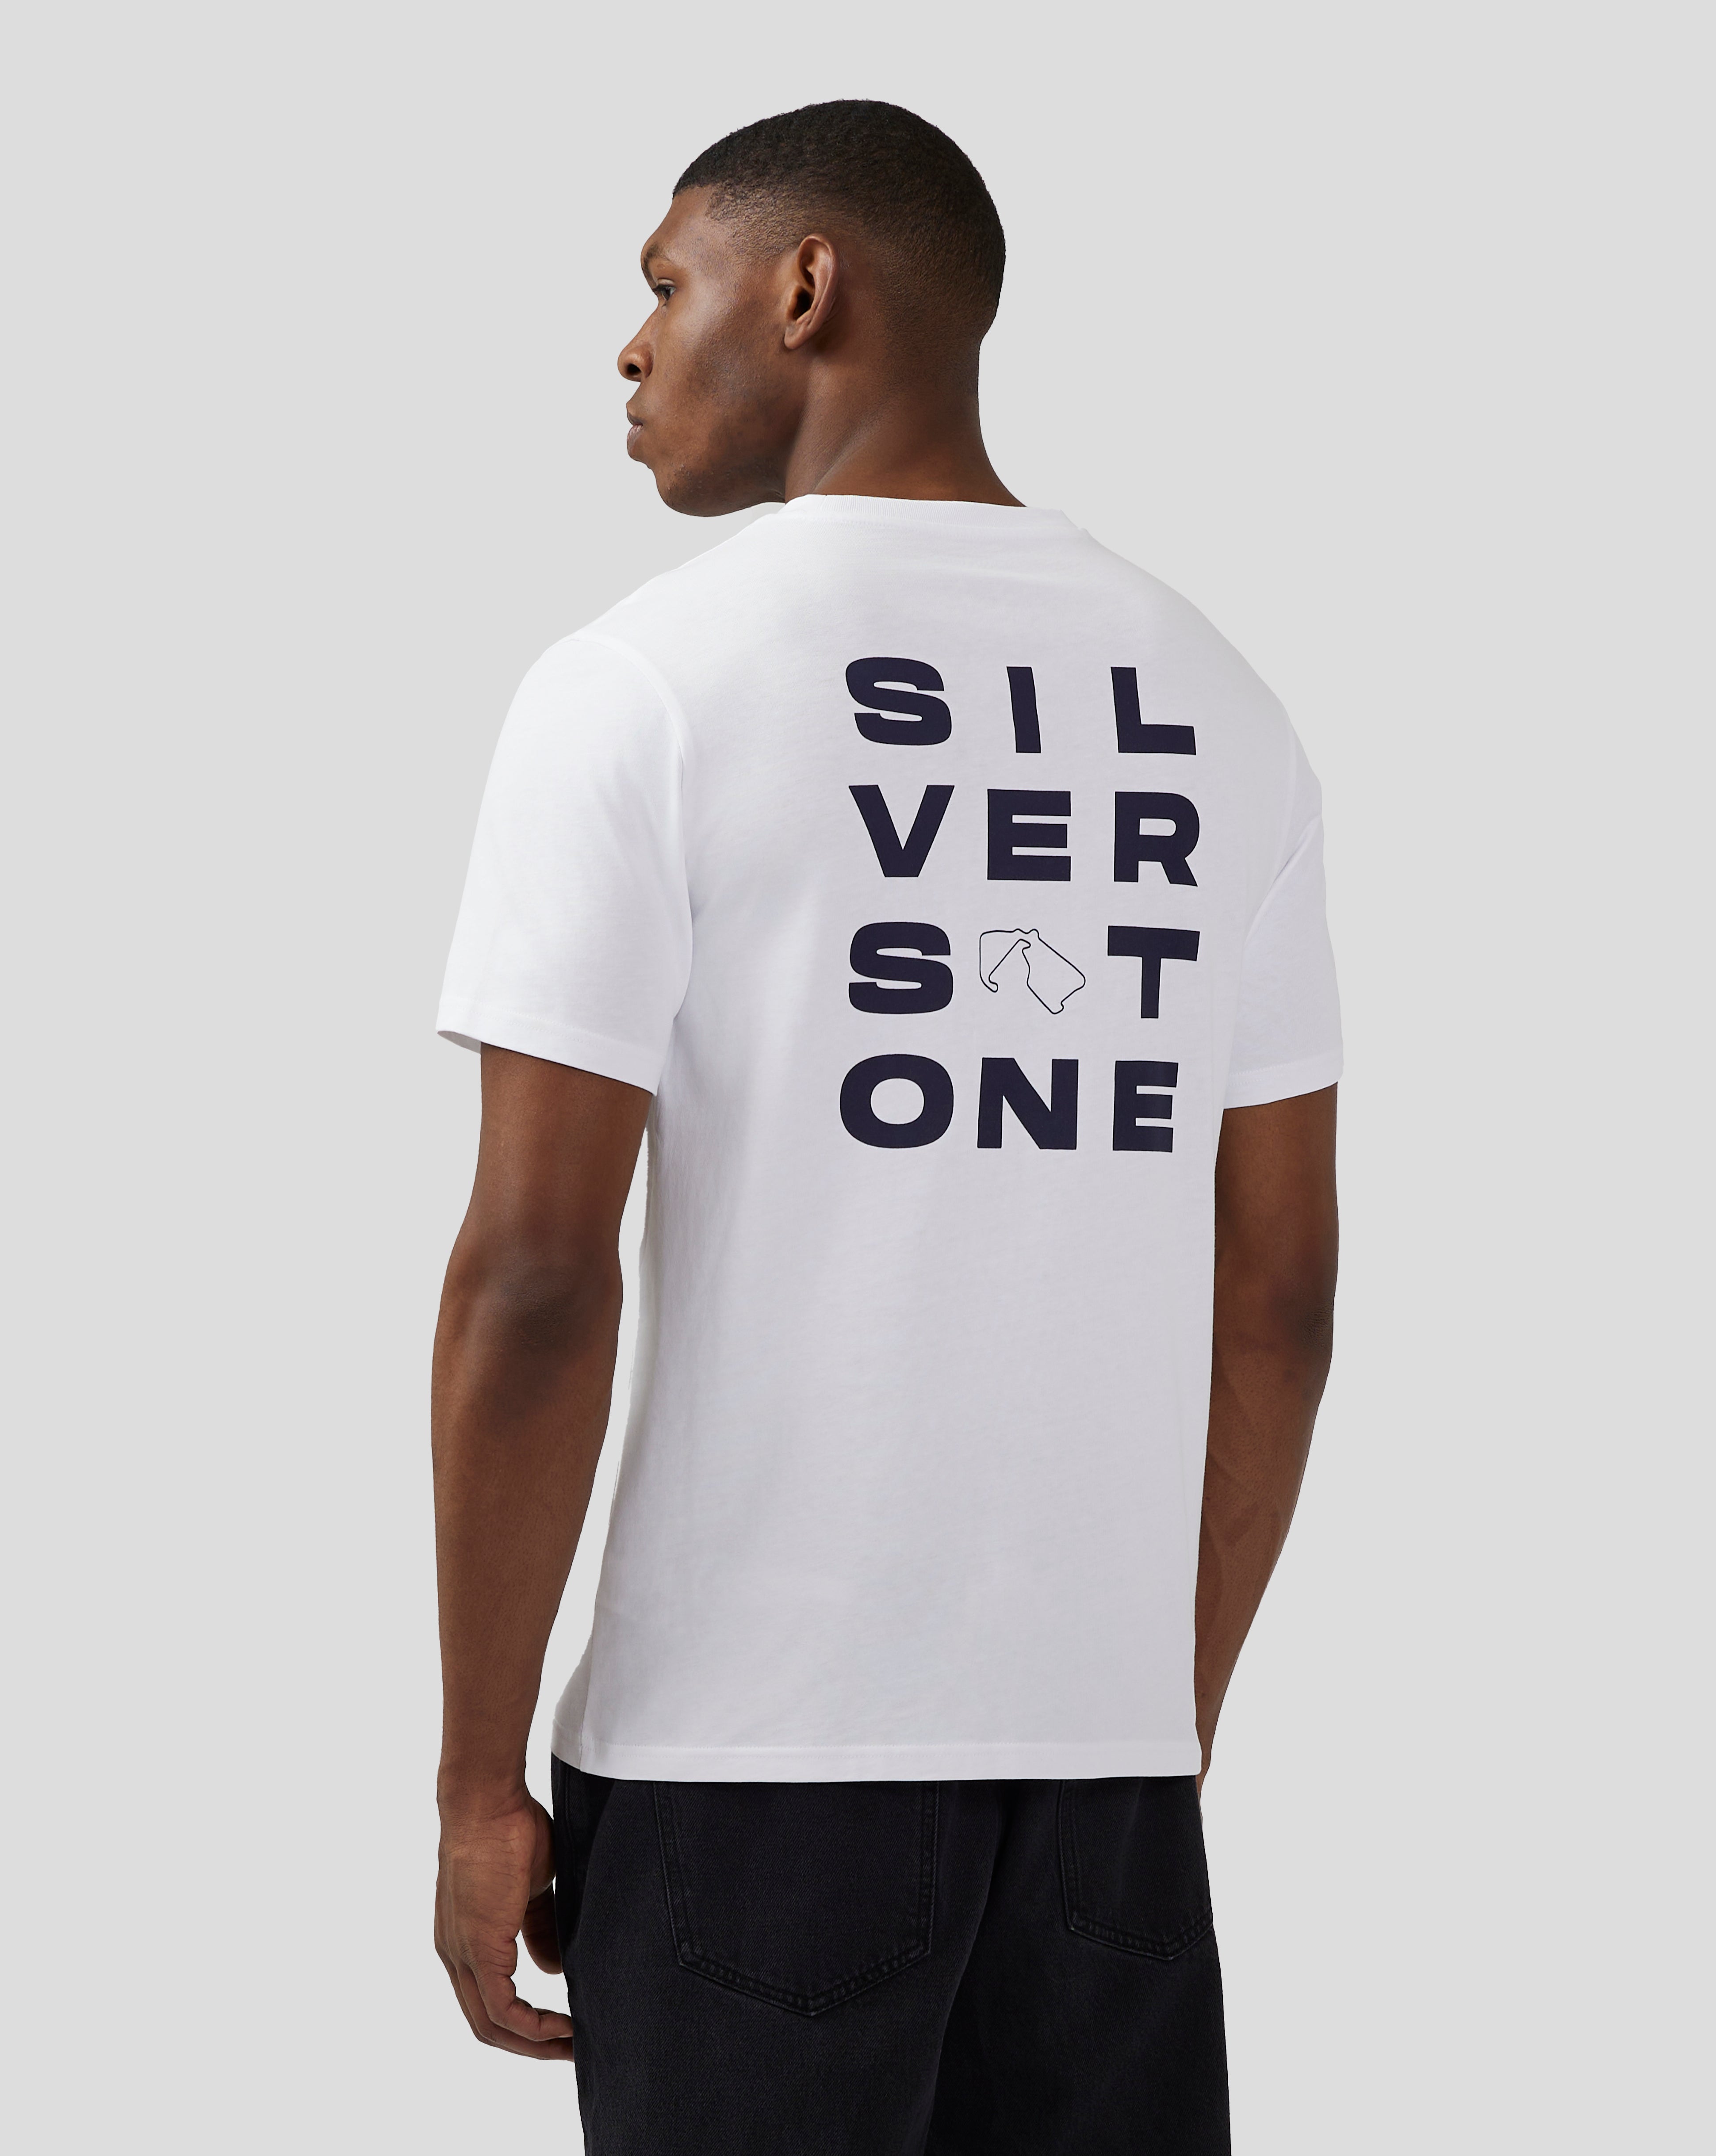 Unisex Silverstone Core Graphic T-Shirt - Brilliant White